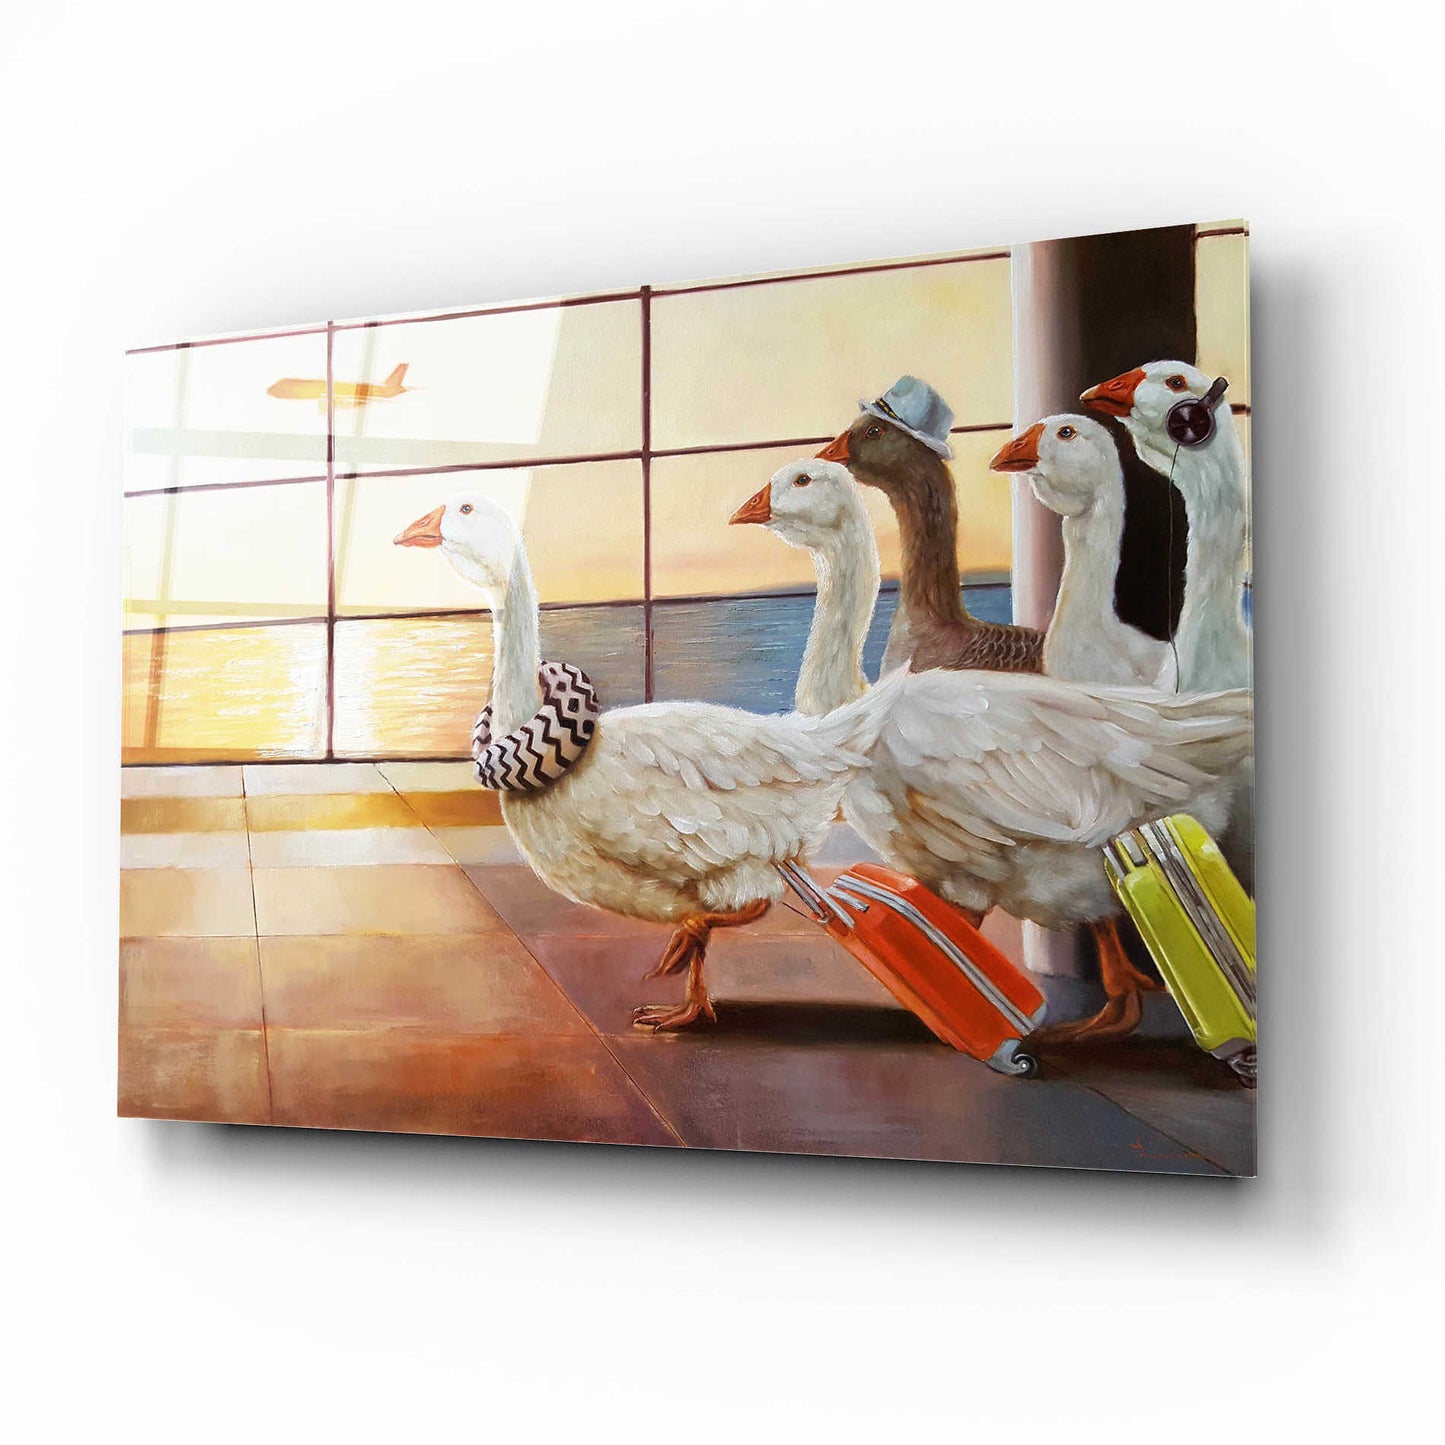 Epic Art 'First Class Migration' by Lucia Heffernan, Acrylic Glass Wall Art,16x12